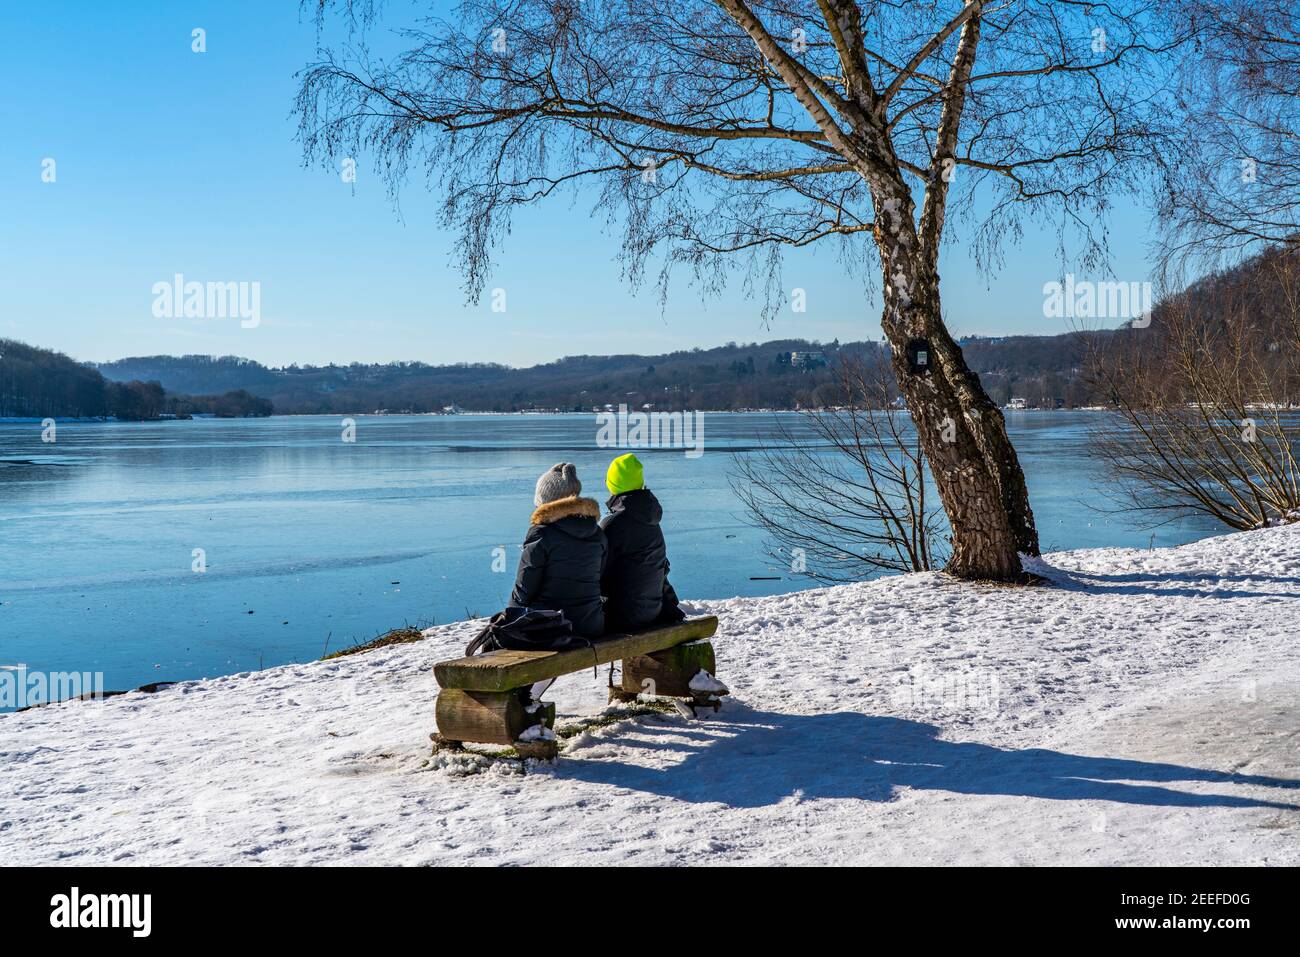 Inverno nella zona della Ruhr, Baldeneysee, innevato, lago parzialmente congelato, escursionisti sulla riva, riva occidentale, Essen, NRW, Germania, Foto Stock